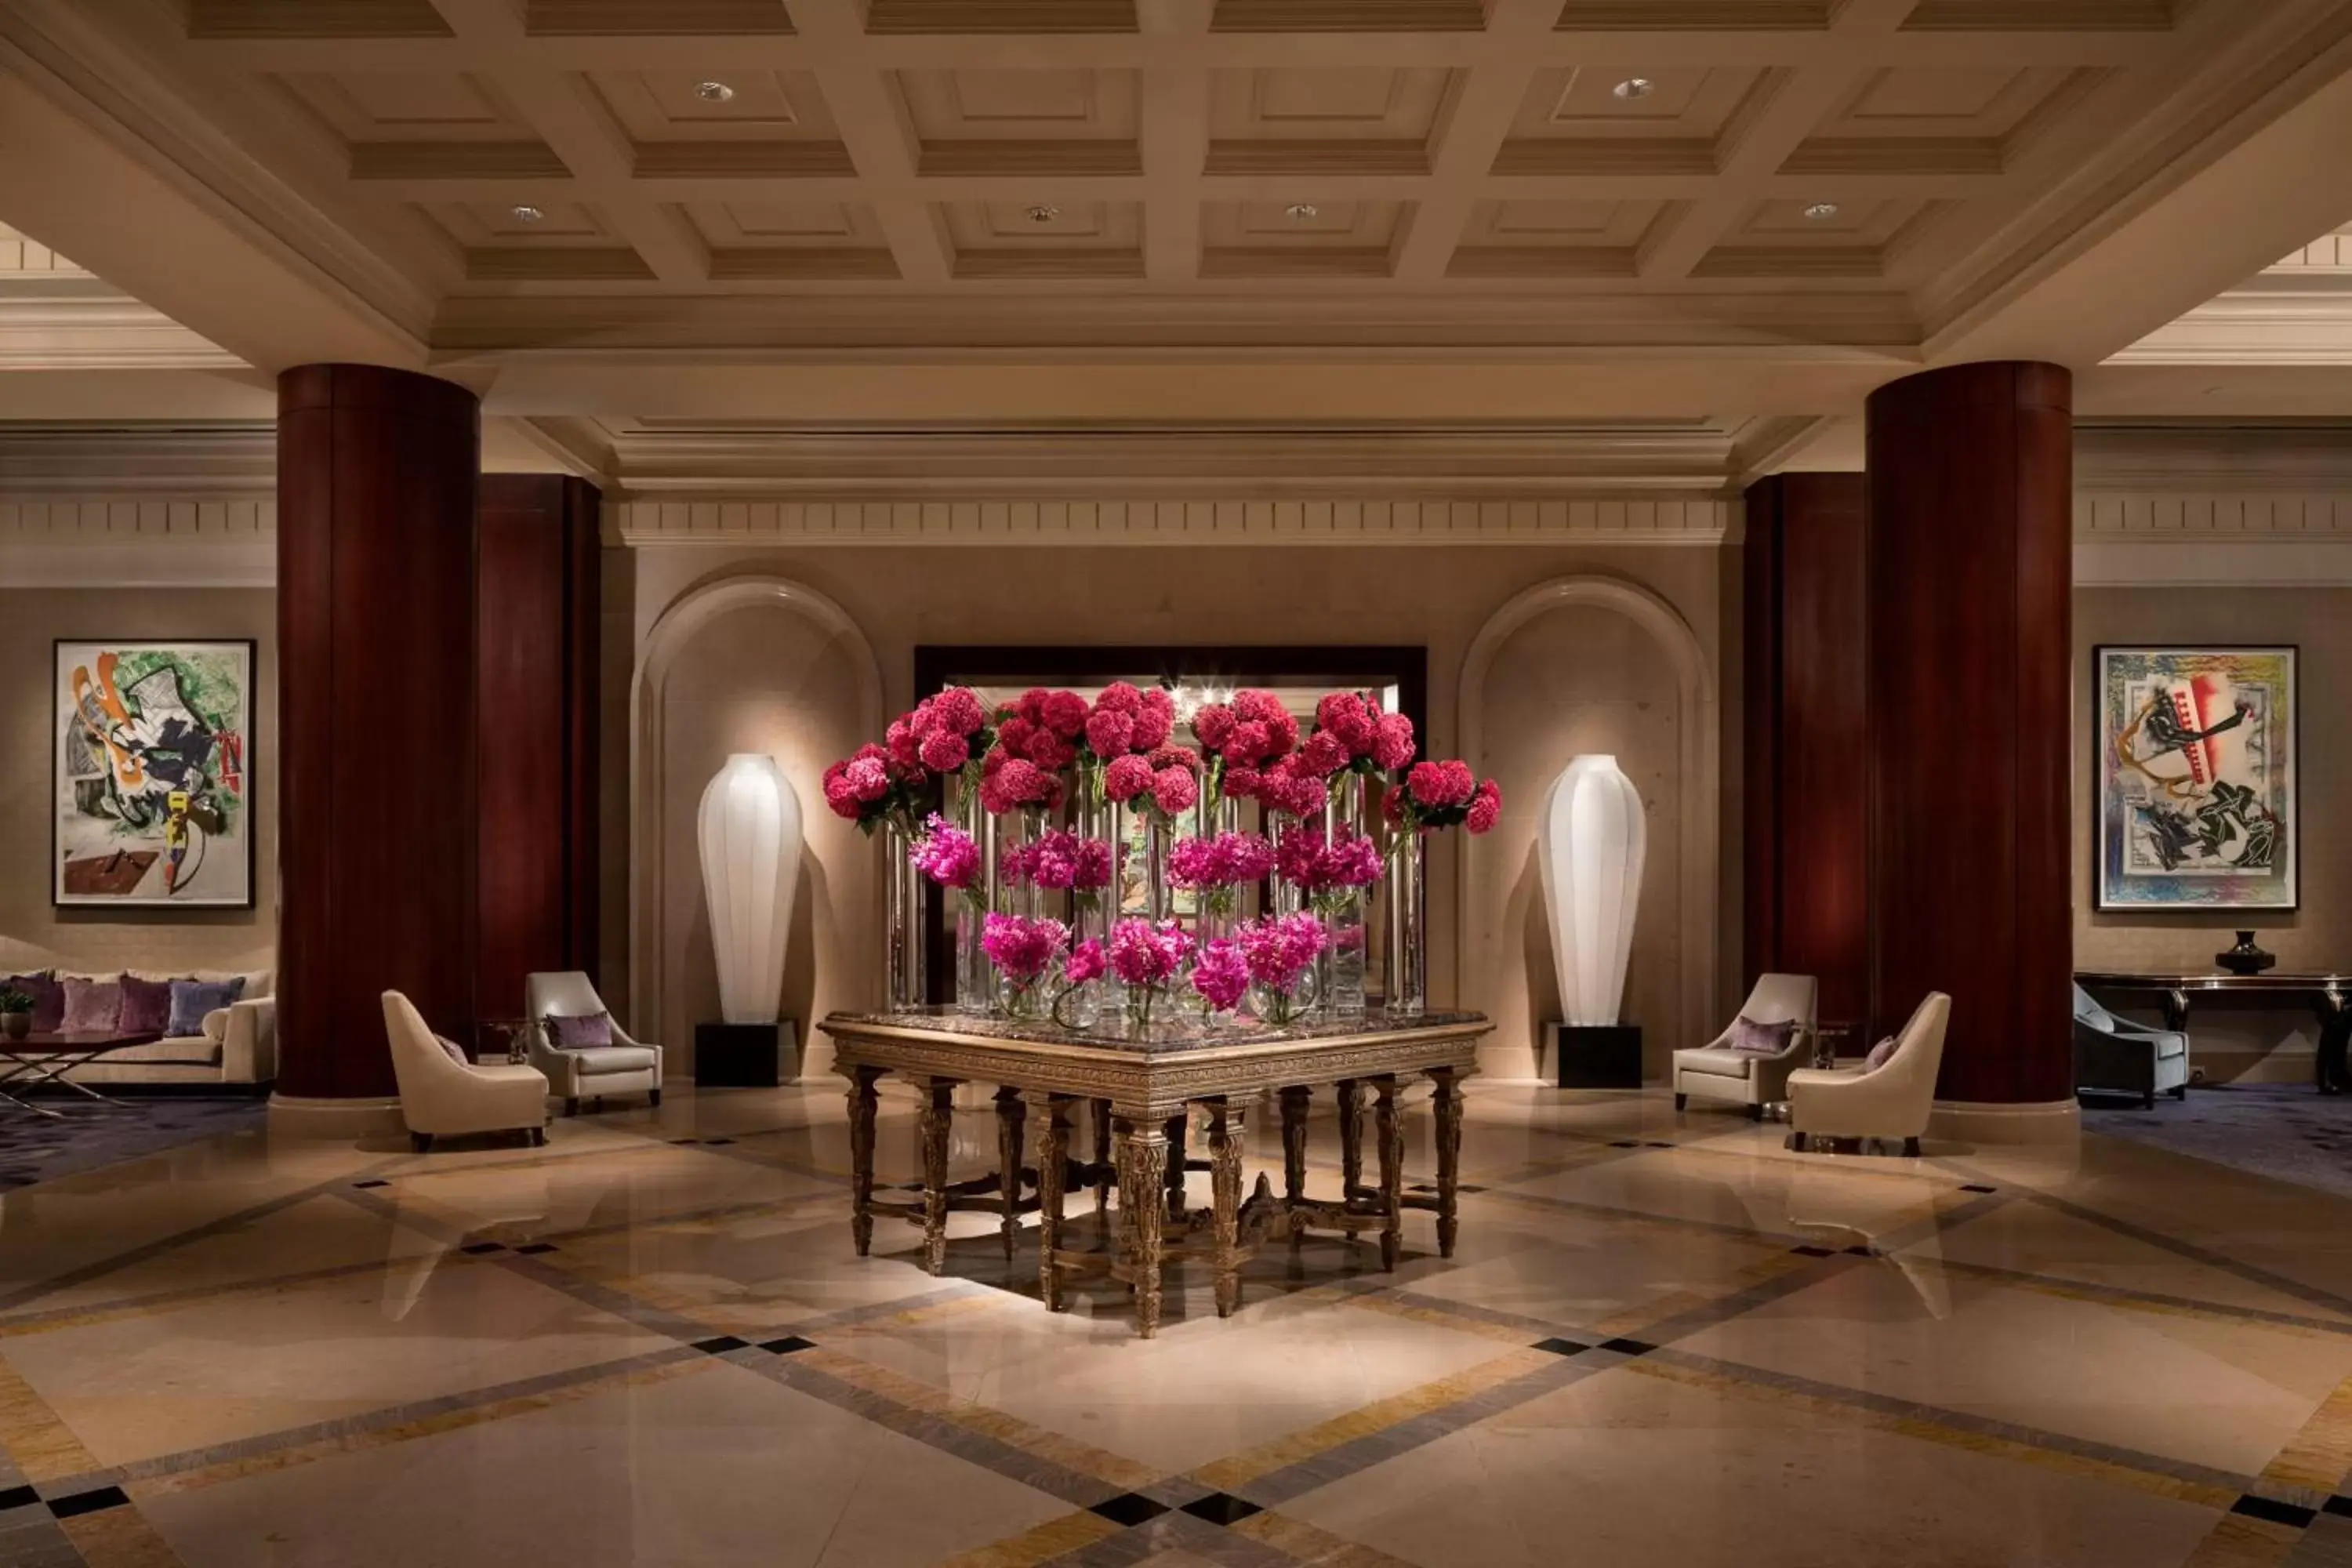 Lobby or reception in The Ritz-Carlton, Dallas